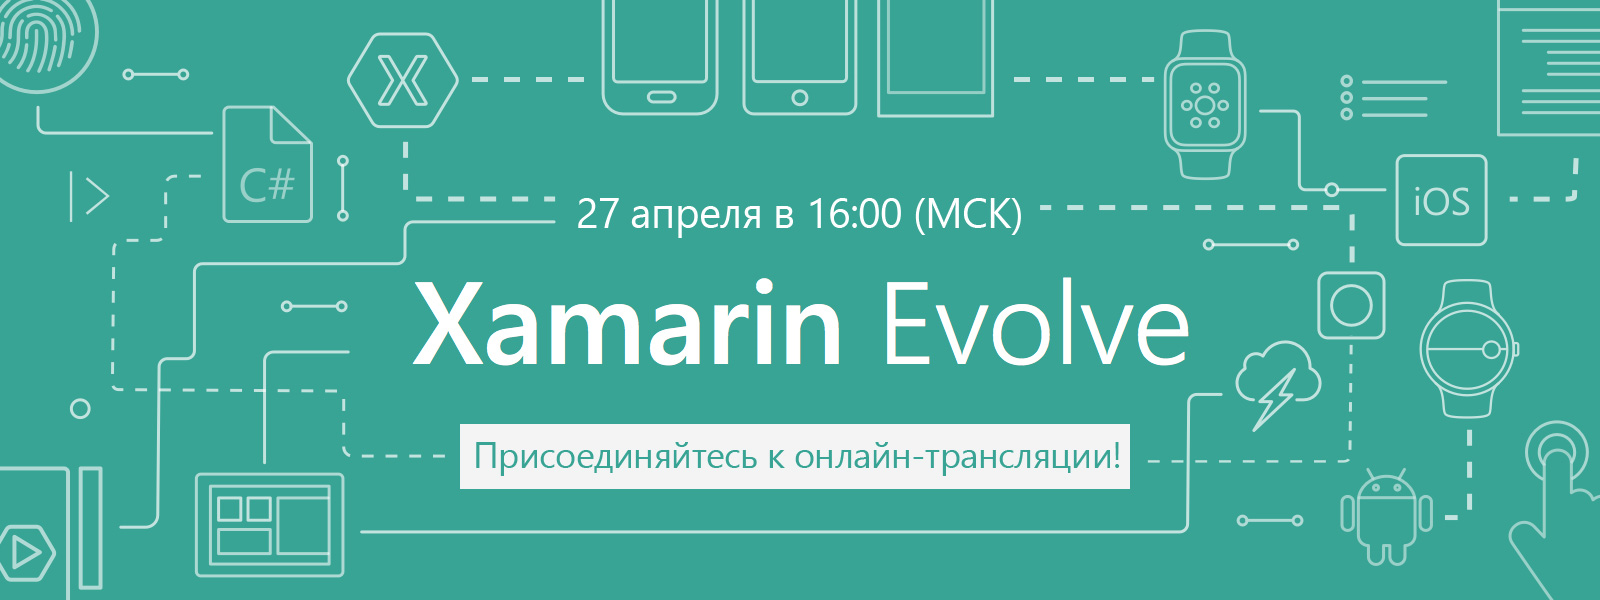 Подключайтесь к онлайн-трансляции! Открытие конференции Xamarin Evolve 27 апреля - 1